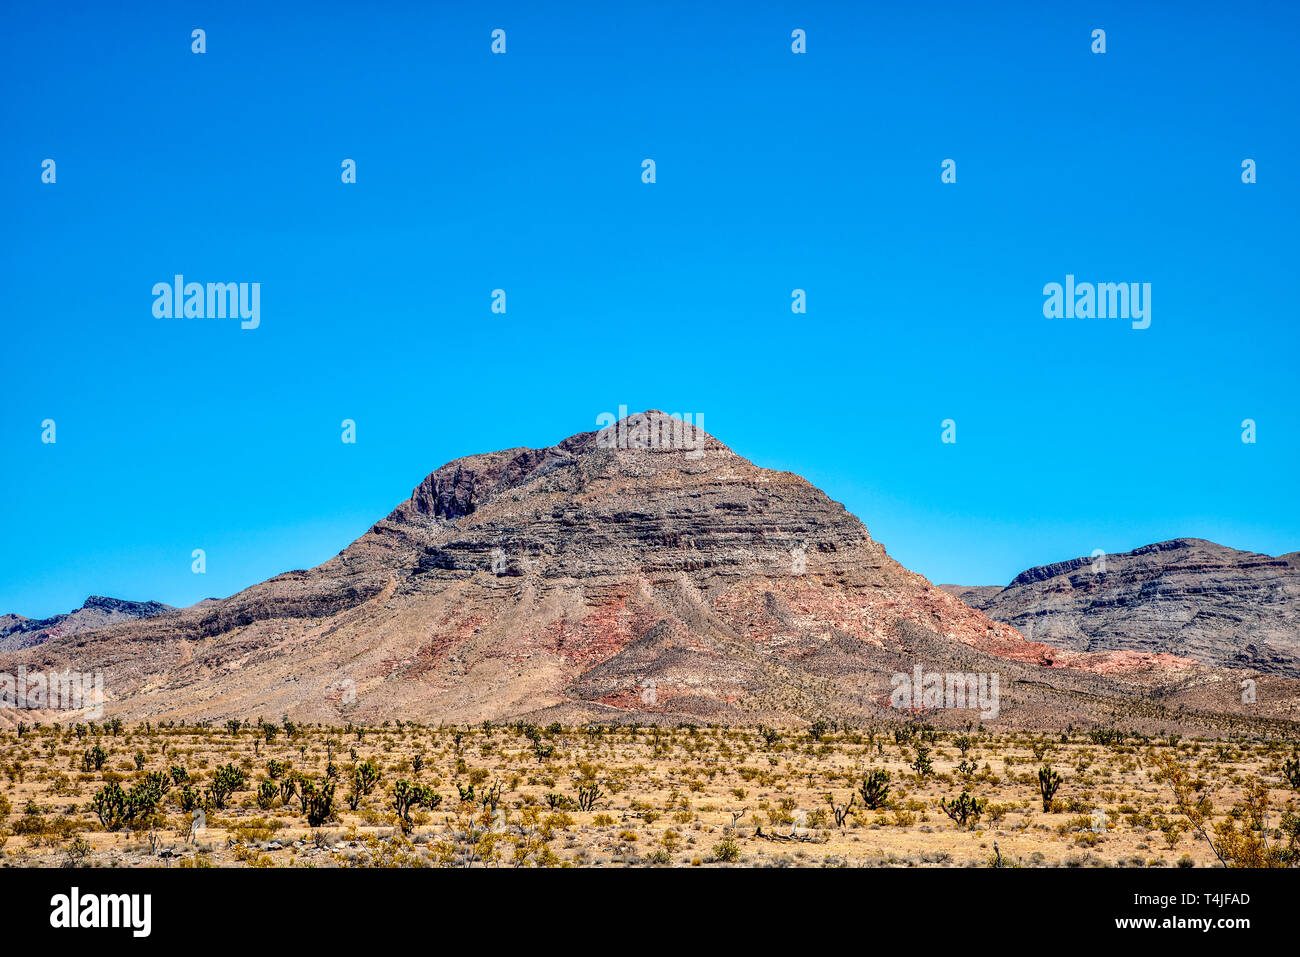 Wüste mit Pinsel und Kaktus, rötlich Rocky karge Berglandschaft unter strahlend blauem Himmel. Stockfoto